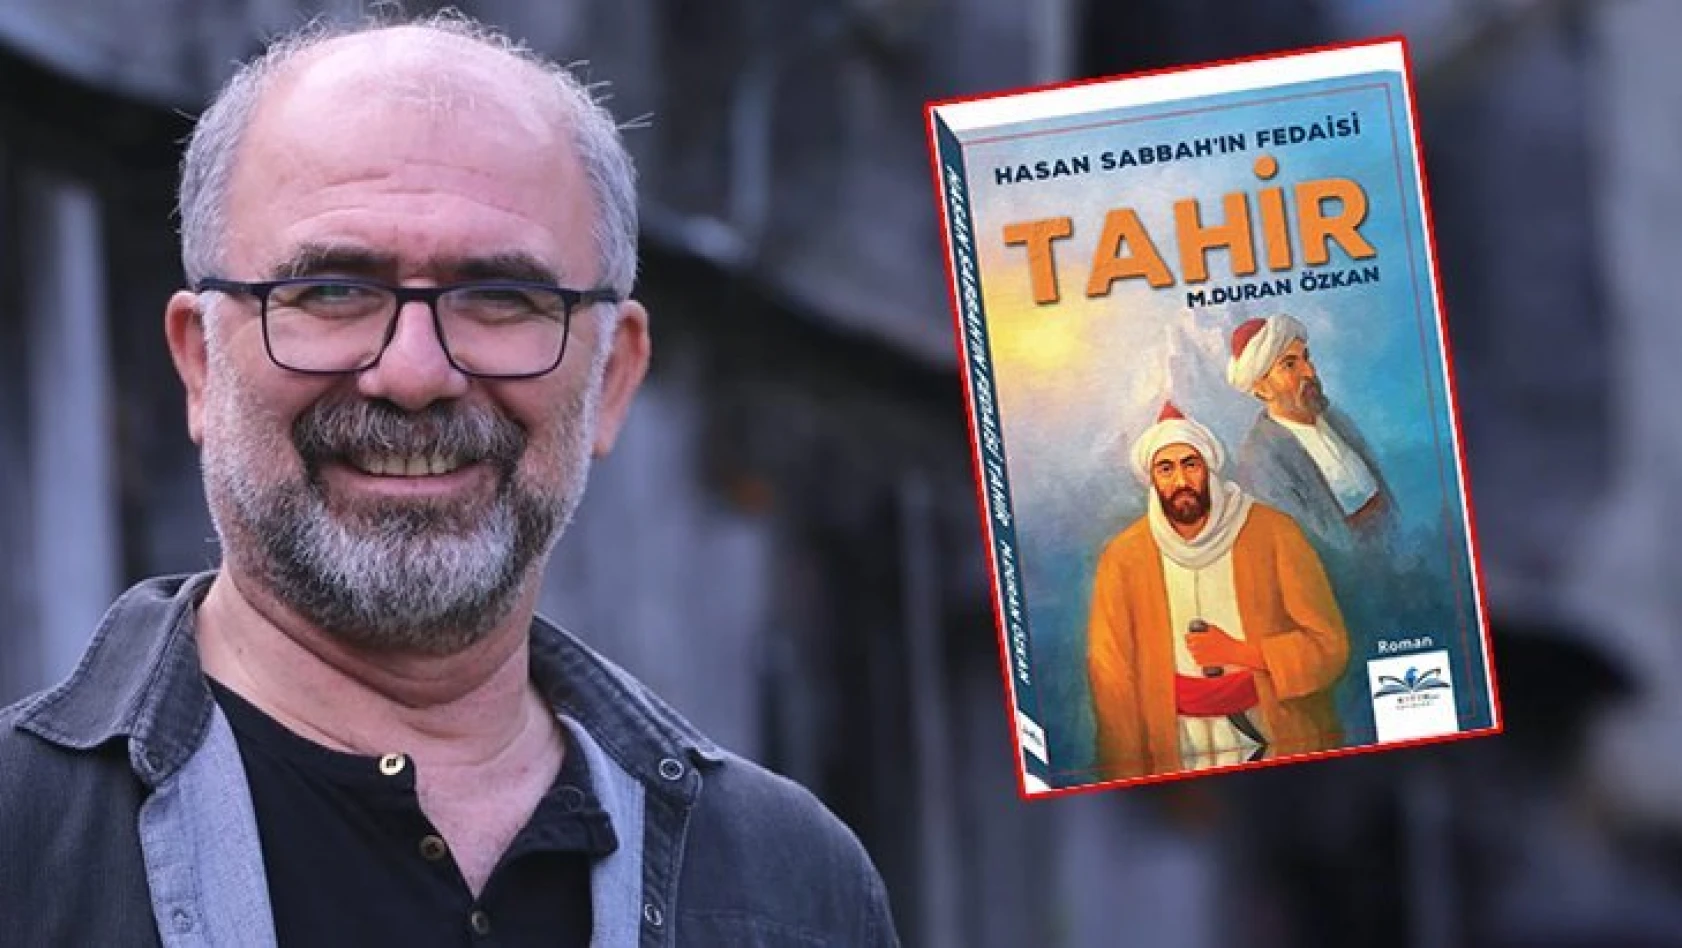 'Hasan Sabbah'ın Fedaisi Tahir' kitabı çıktı